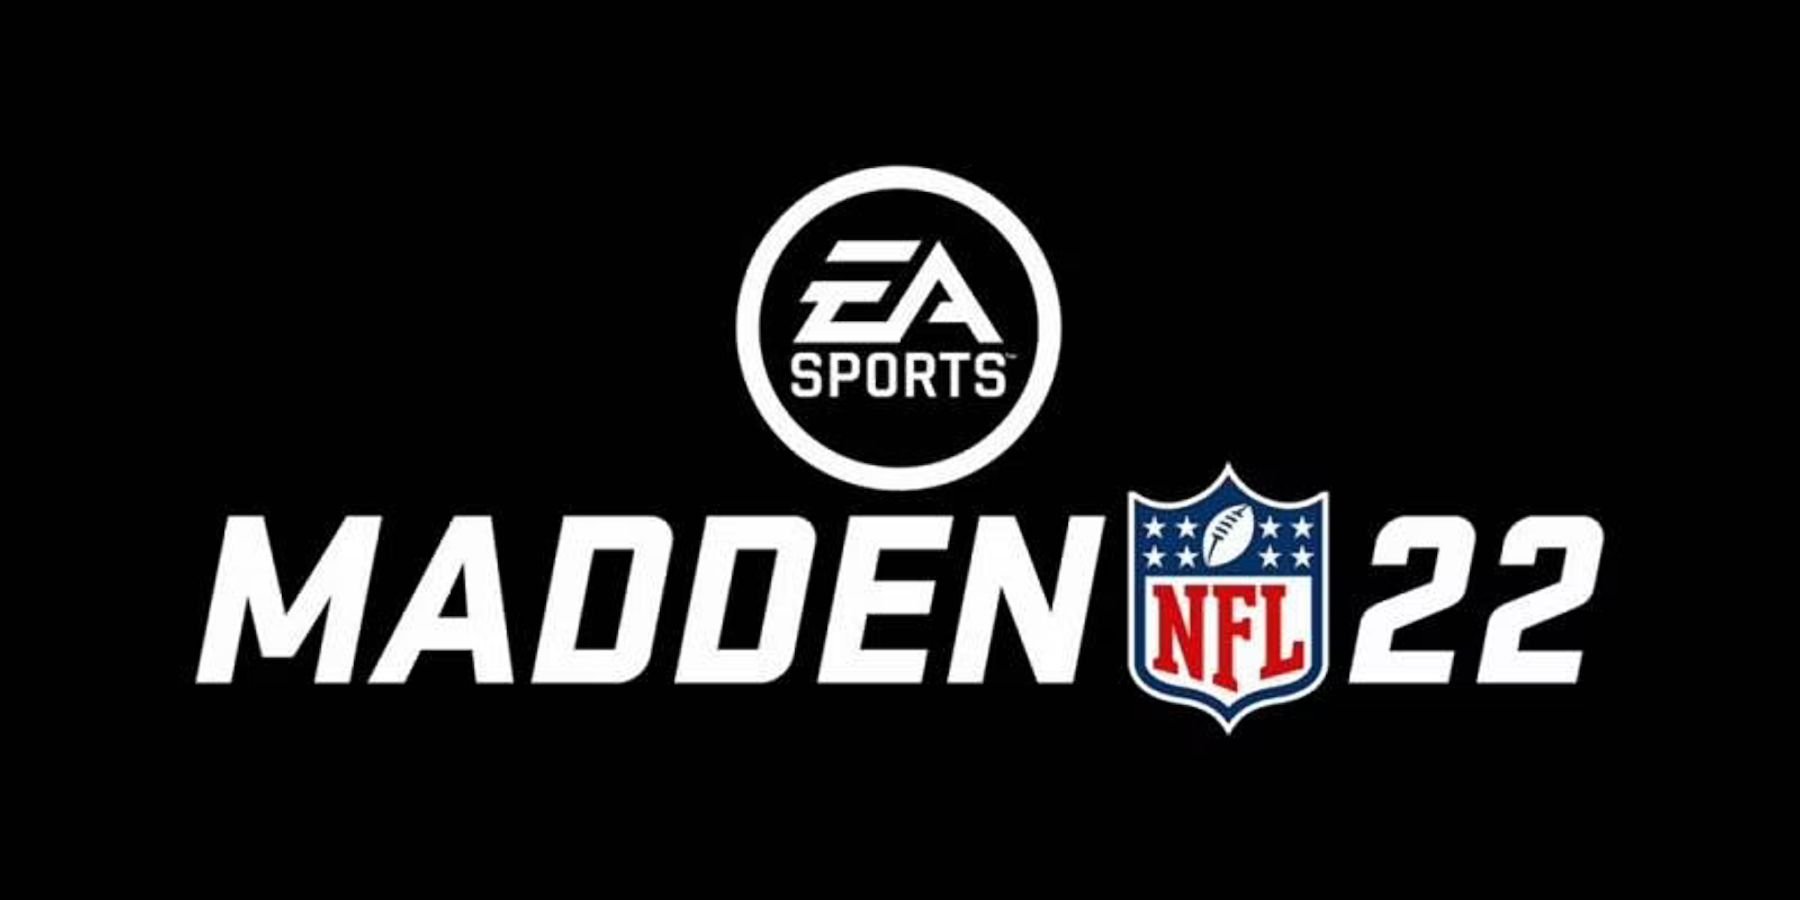 Redditor поймал на видео мошенника с рассинхронизацией Madden NFL 22 который признался в нечестной игре